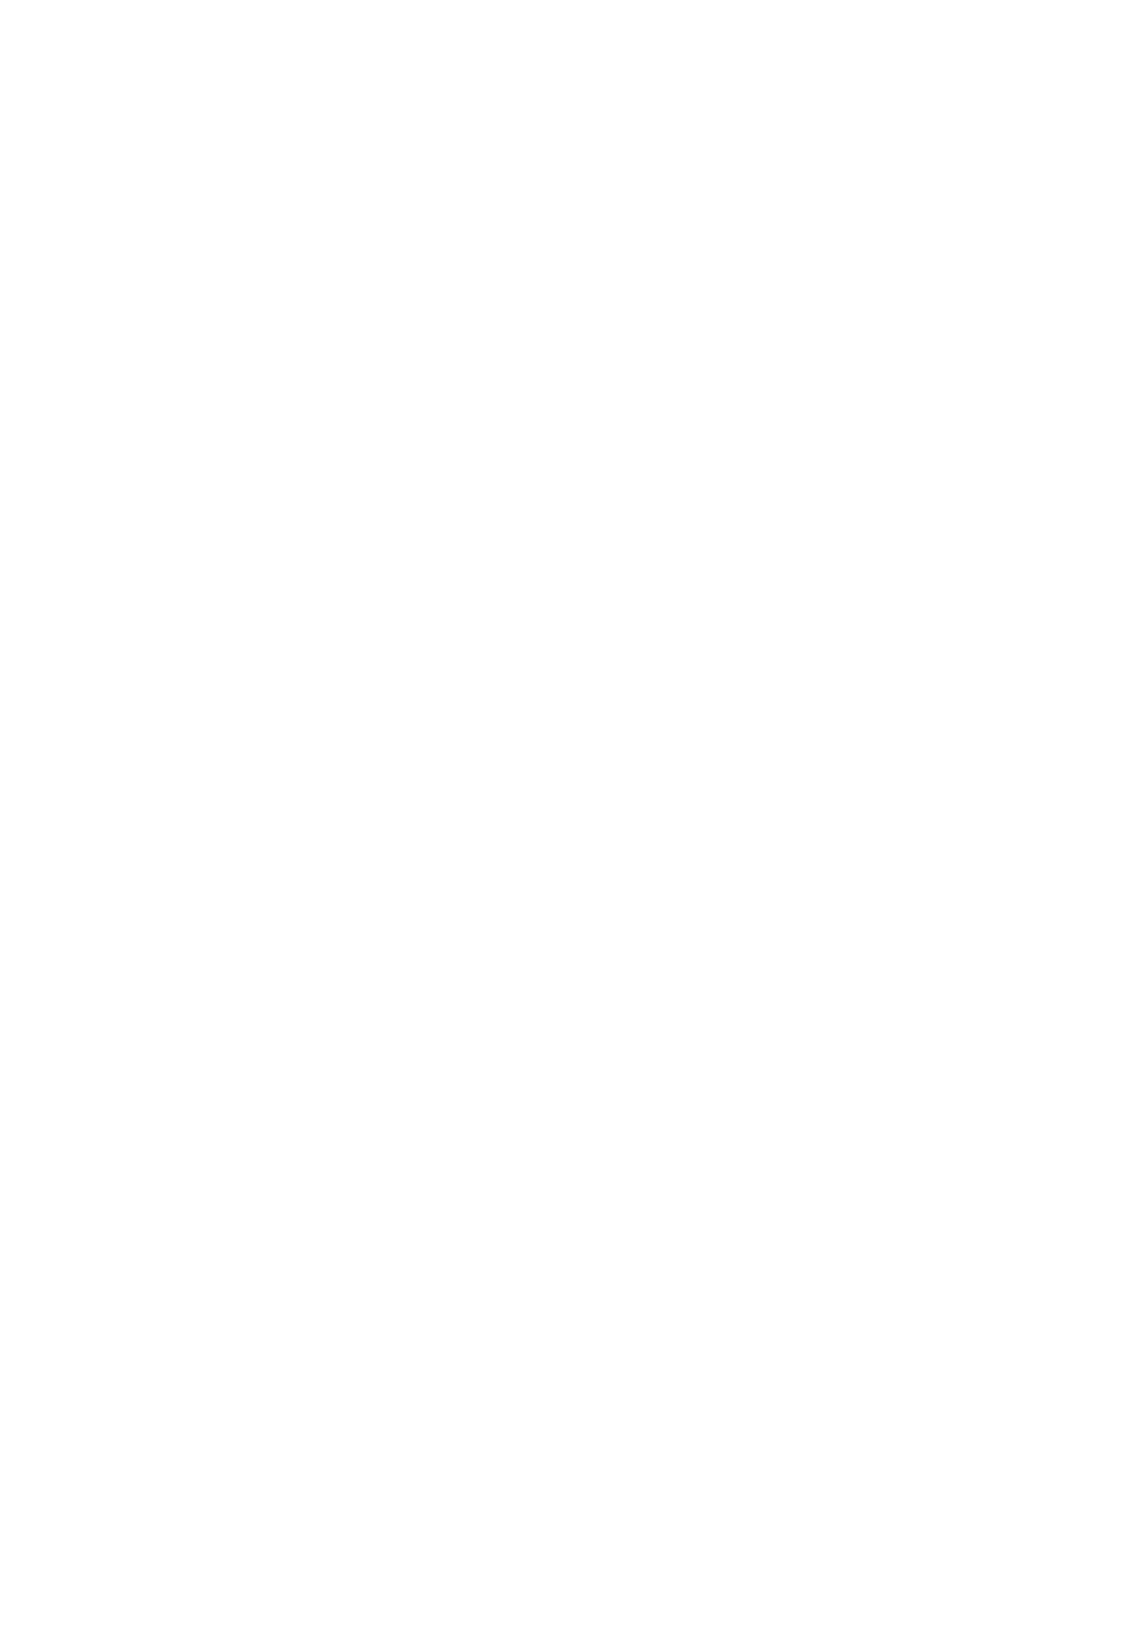 Cue Health Logo groß für dunkle Hintergründe (transparentes PNG)